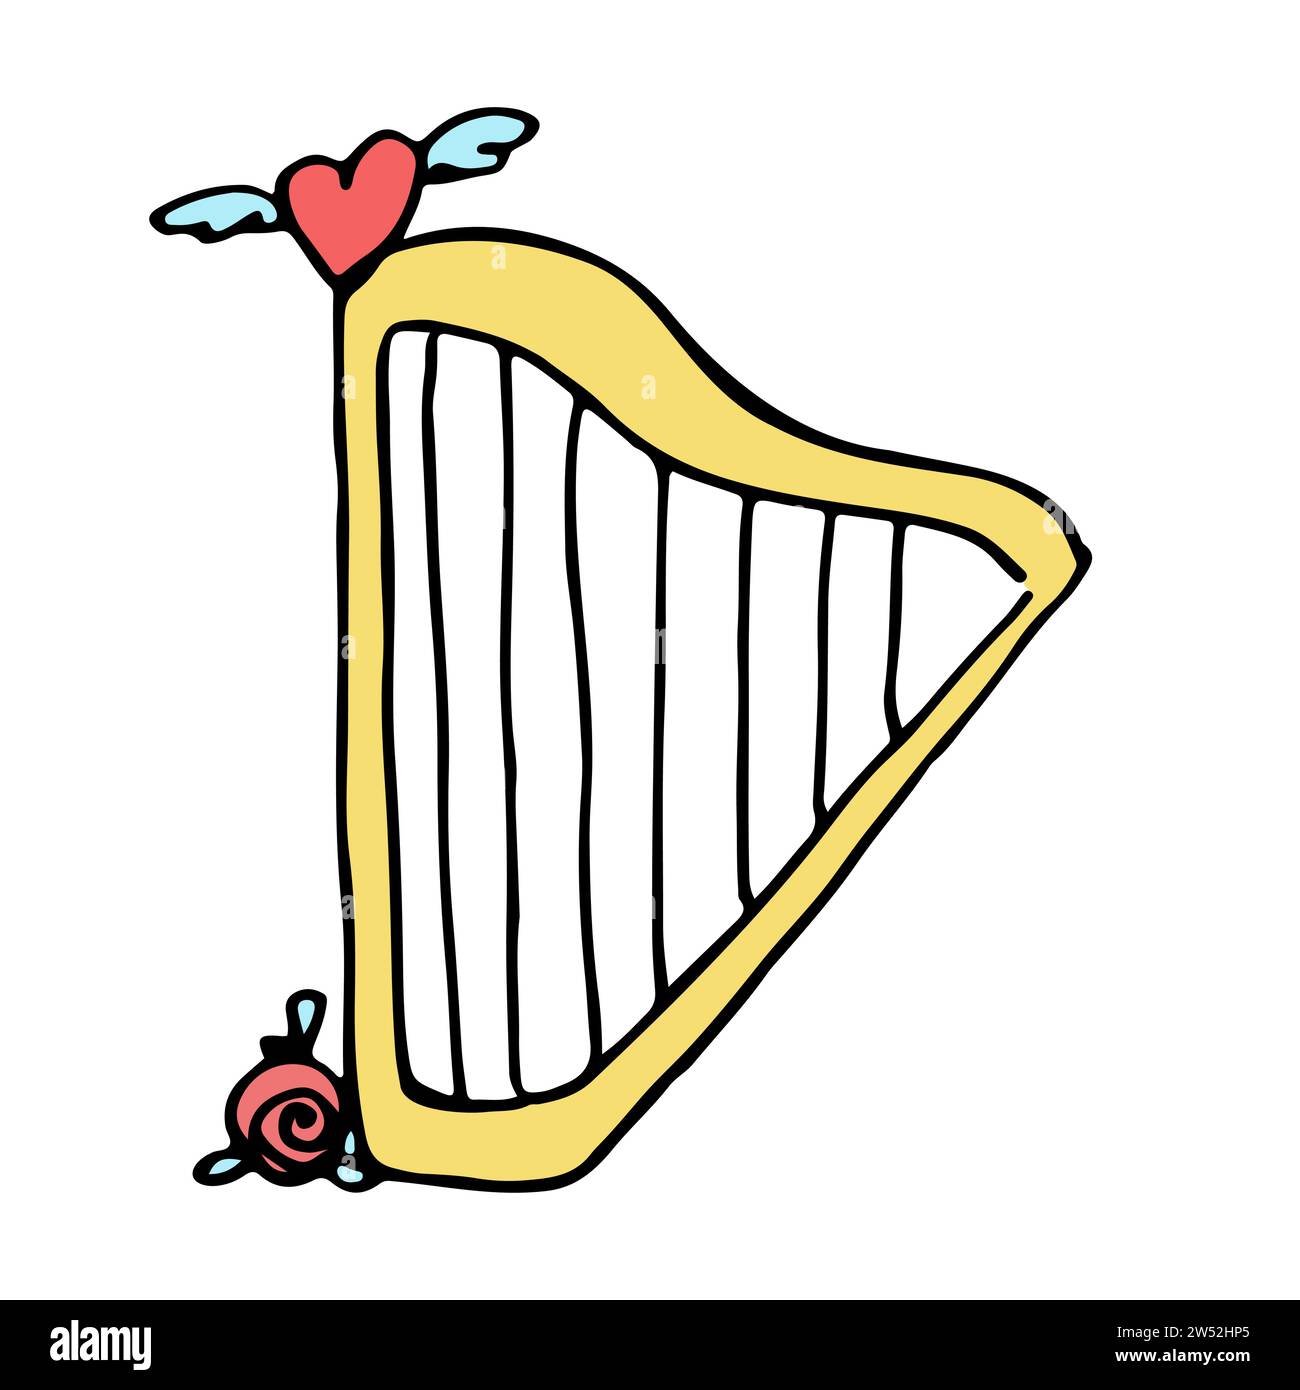 Harpe de dessin animé de couleur jaune avec une rose et un coeur ailé rouge dessus. Color doodle sur le thème de l'amour, des relations, de la romance. Illustration vectorielle Illustration de Vecteur